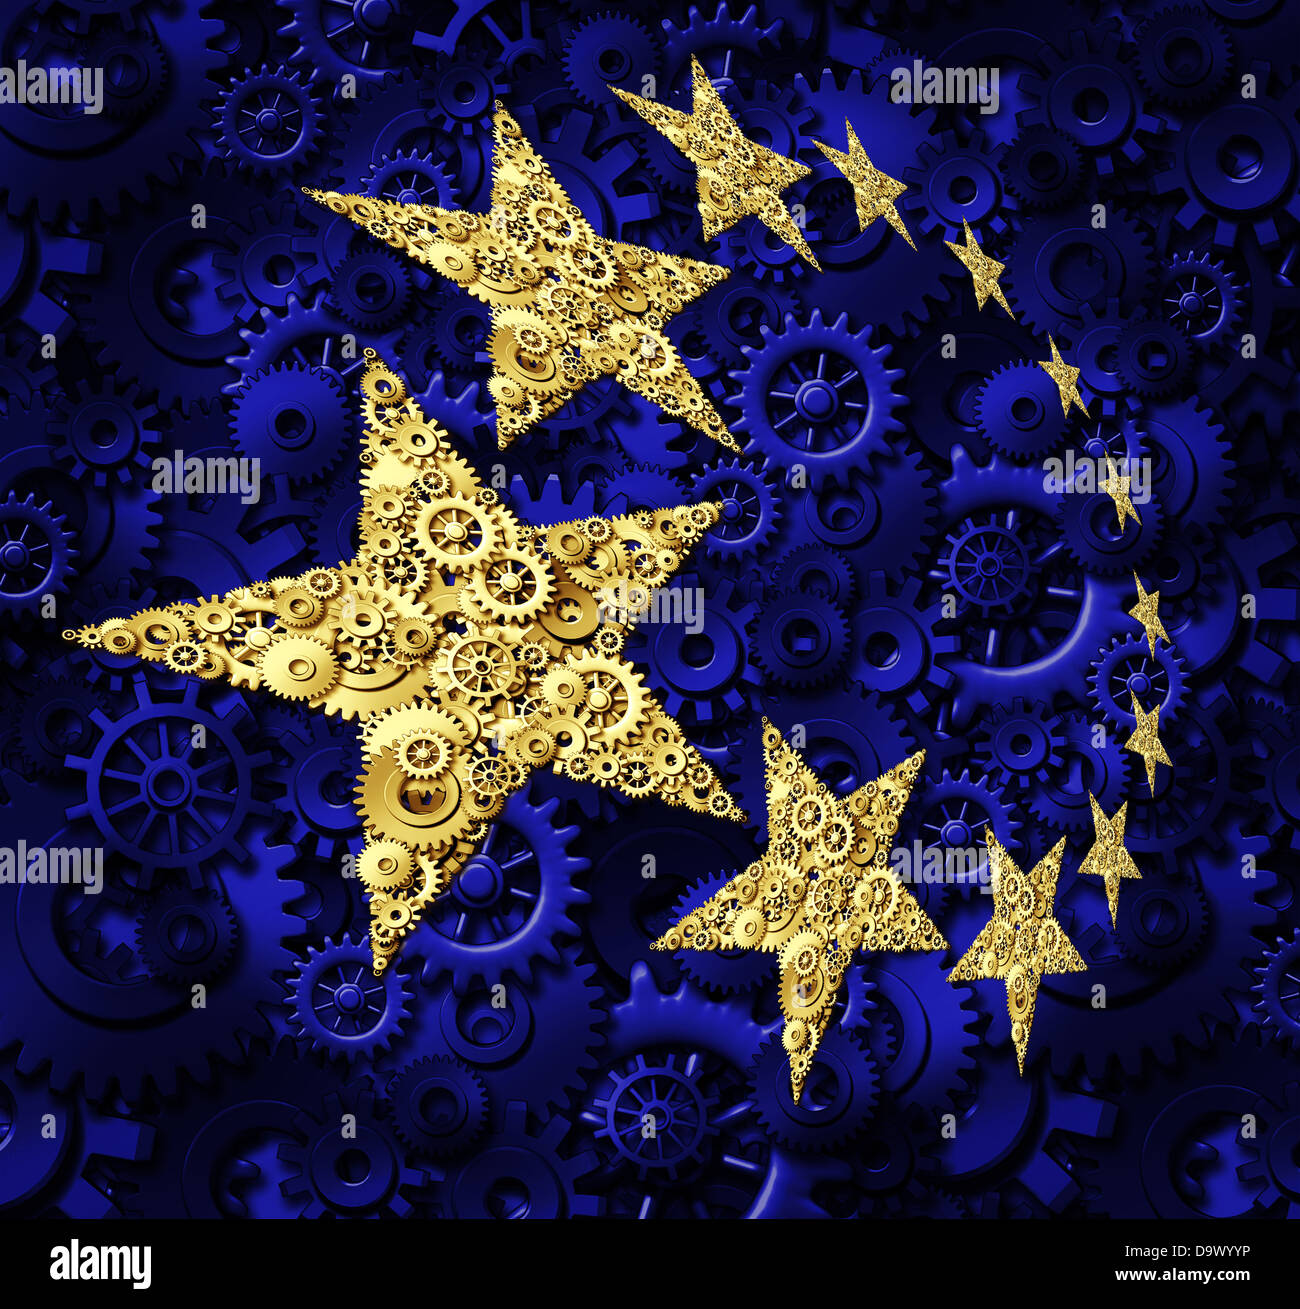 L'Europe de l'industrie et de l'économie de l'Union européenne entreprise concept avec un drapeau bleu et jaune or étoile faite d'engrenages et de pignons comme un symbole de la collaboration d'un réseau connecté de Allemagne France Italie et Royaume-Uni. Banque D'Images